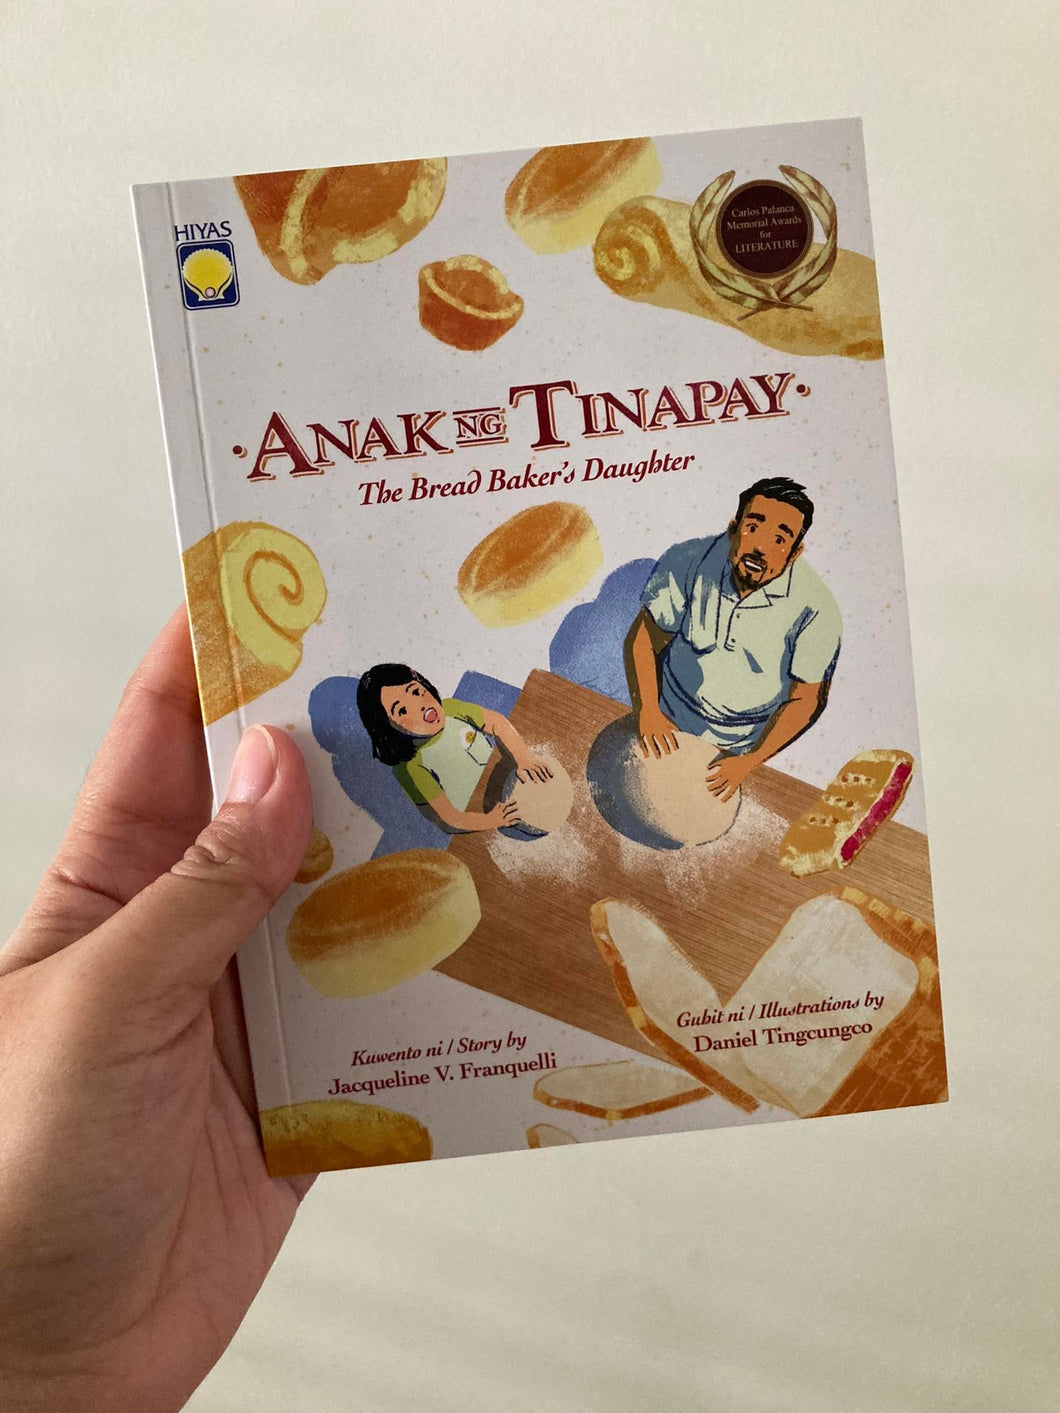 Anak ng Tinapay (The Bread Baker’s Daughter)